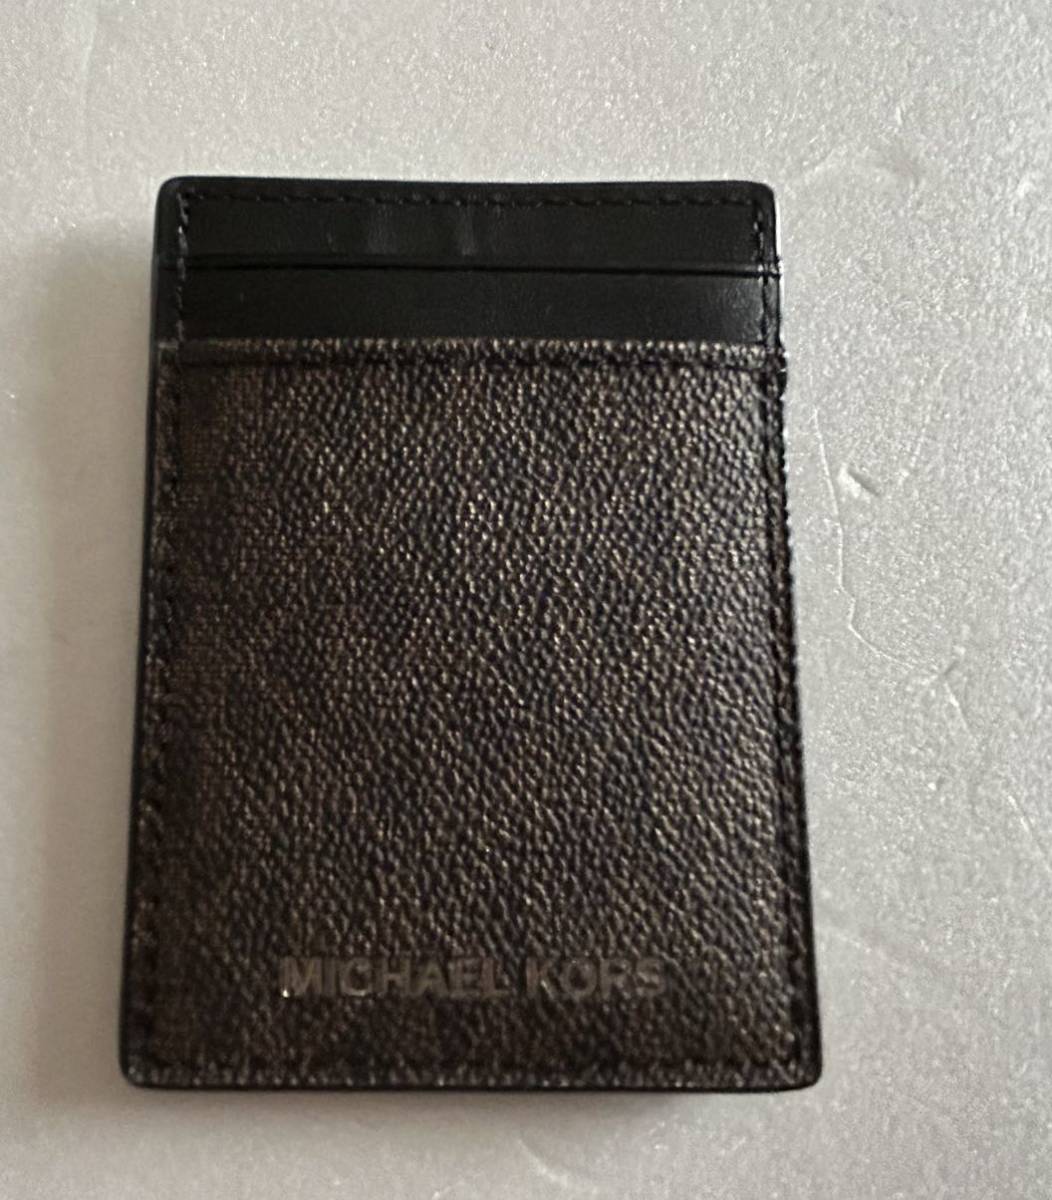 [ бесплатная доставка ] новый товар * Michael Kors MICHAEL KORS* мужской карта inserting & зажим для денег комплект в коробке 1 футляр для карточек 